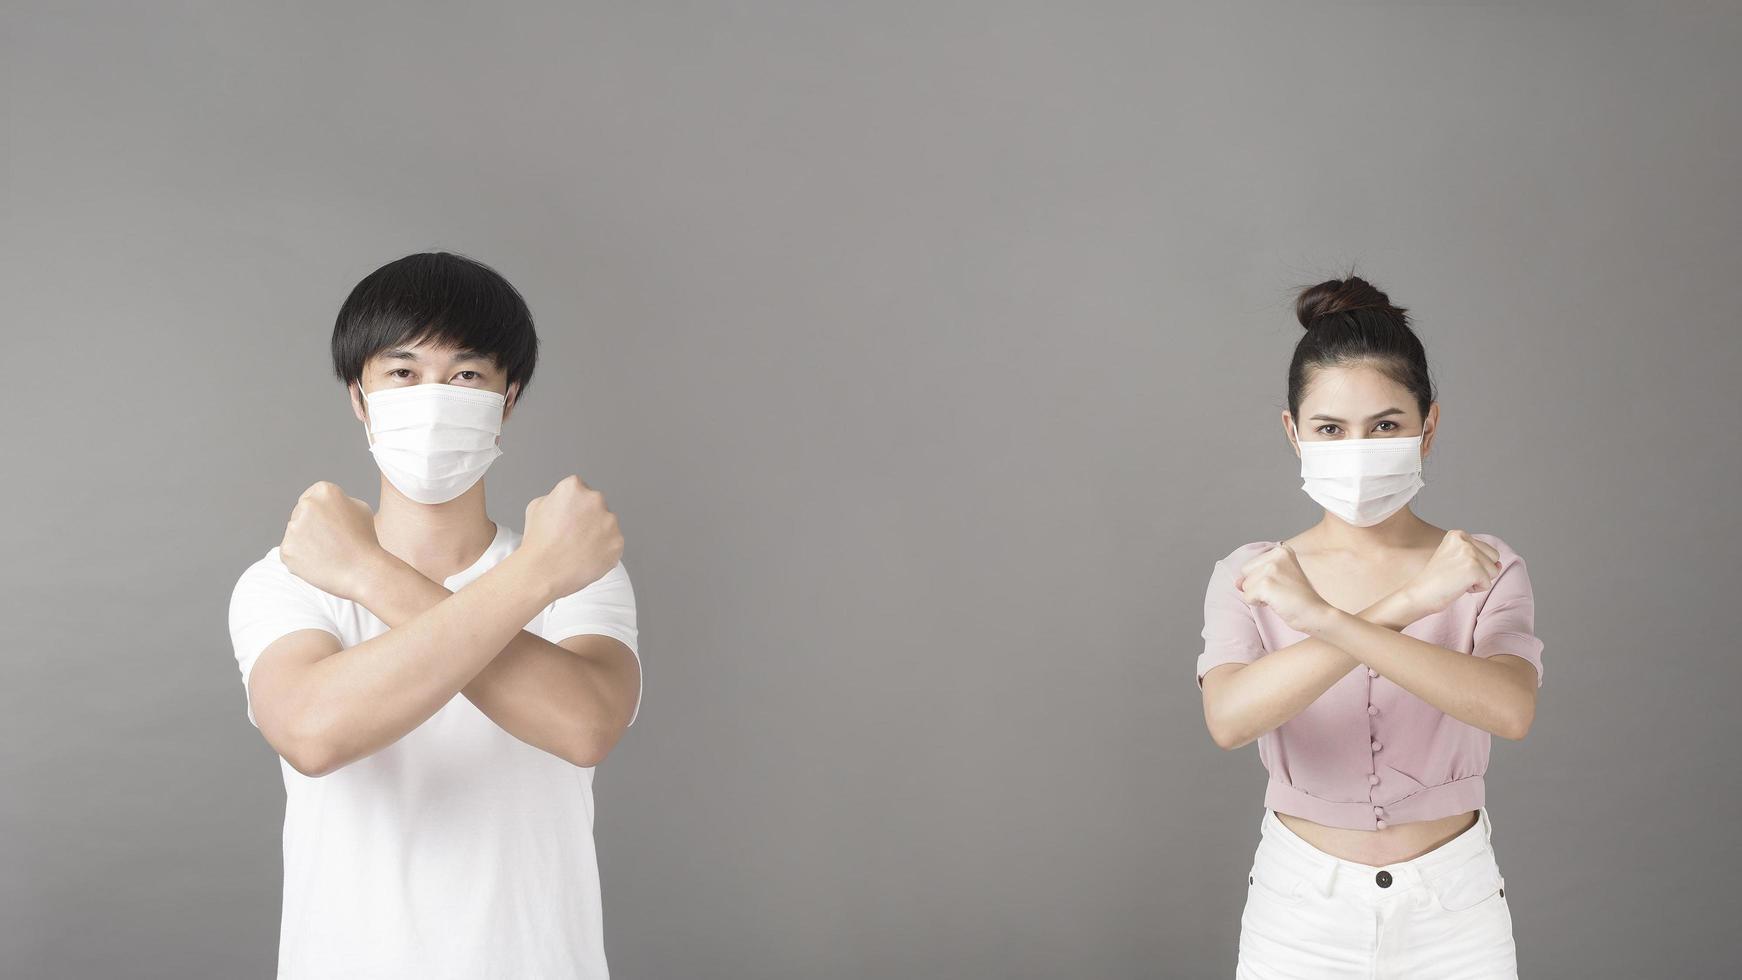 ritratto di uomo e donna con maschera chirurgica in studio, concetto di distanza sociale foto